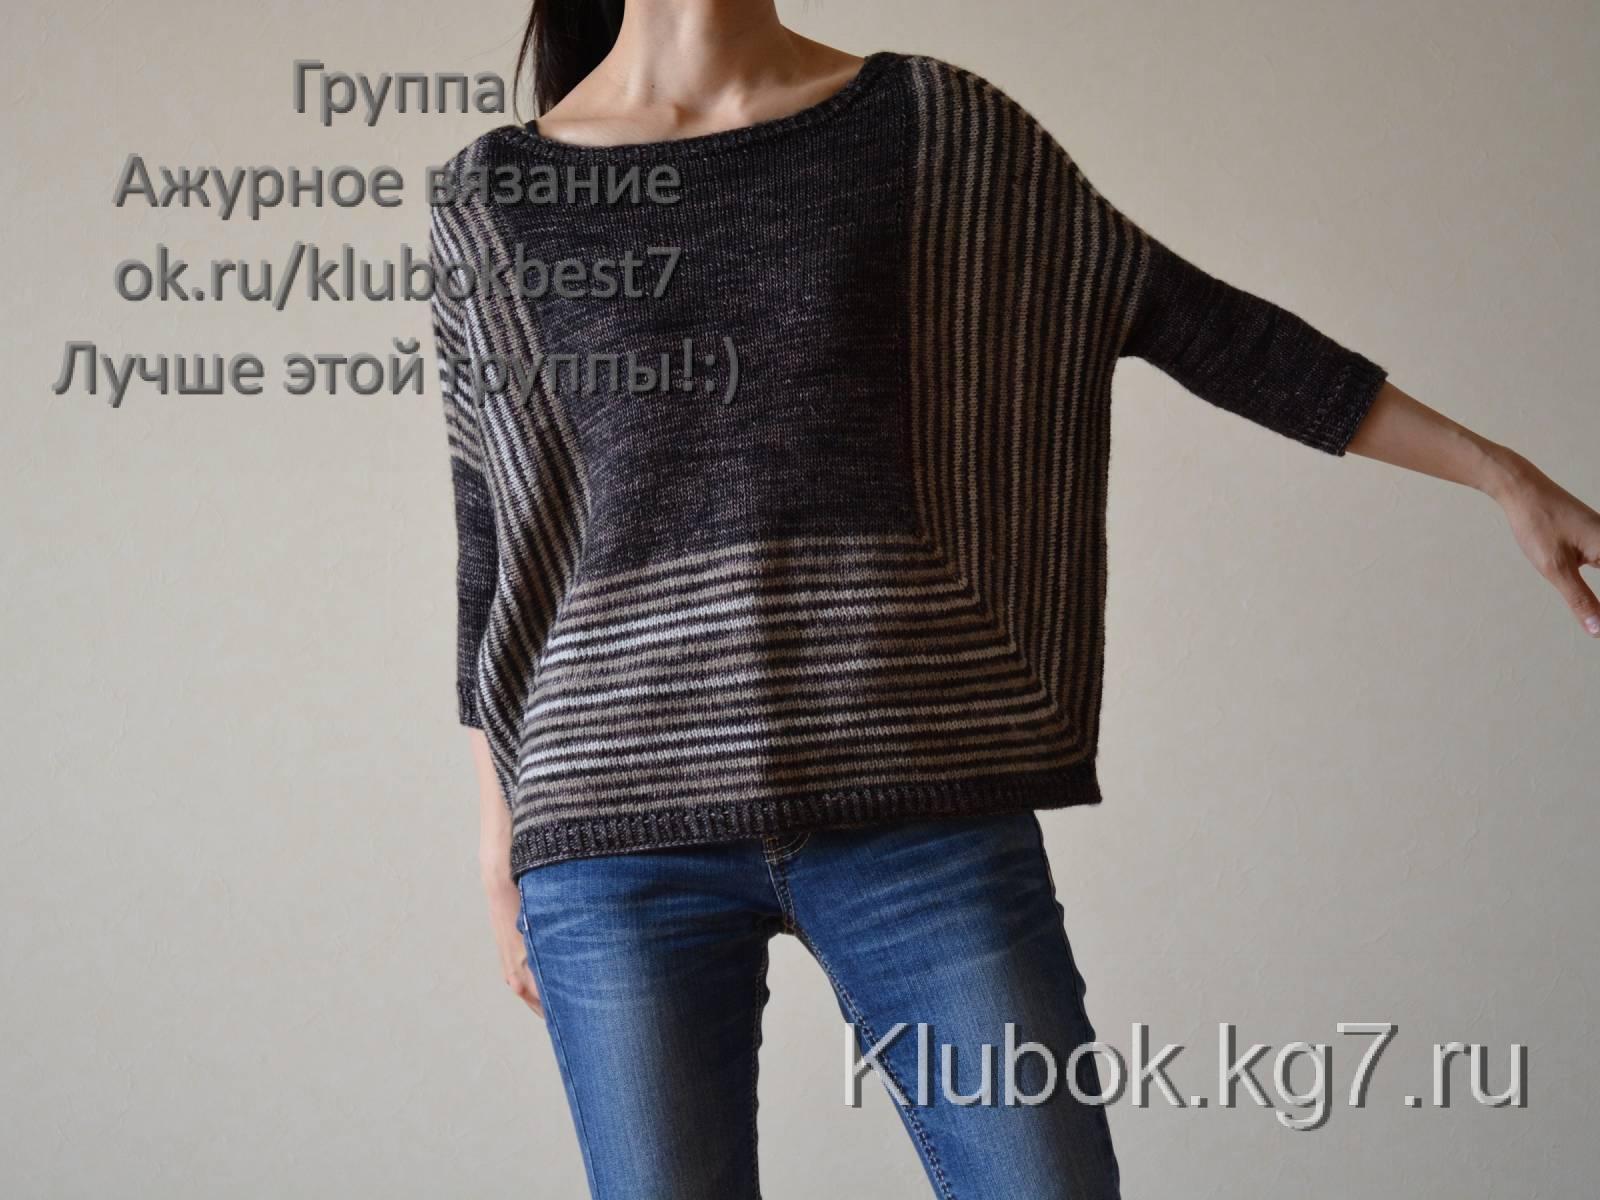 Пуловер "Ярви" по дизайну Веры Валимаки.